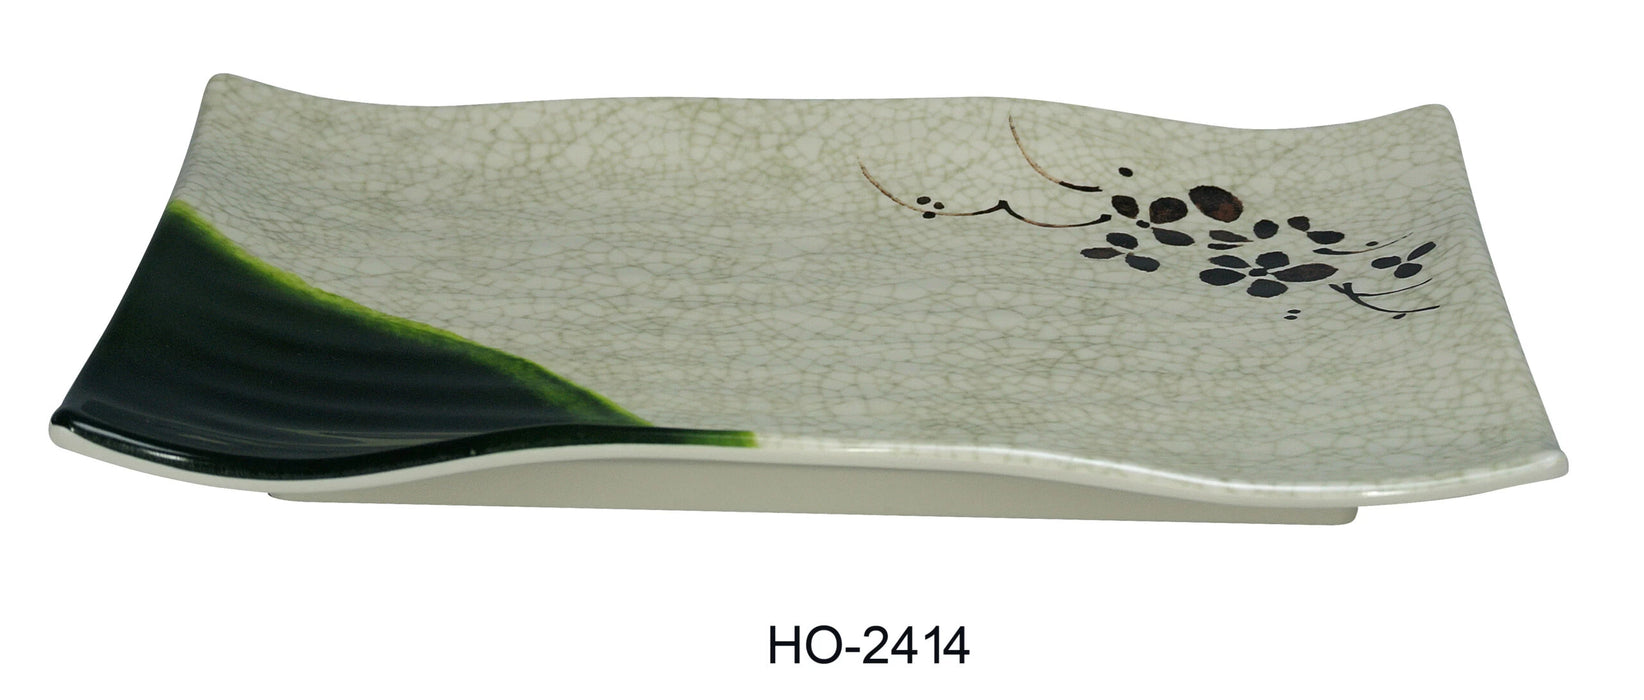 Yanco HO-2414 Honda Ripple Plate, Rectangular, 13″ Length, 9″ Width, Melamine, Pack of 36